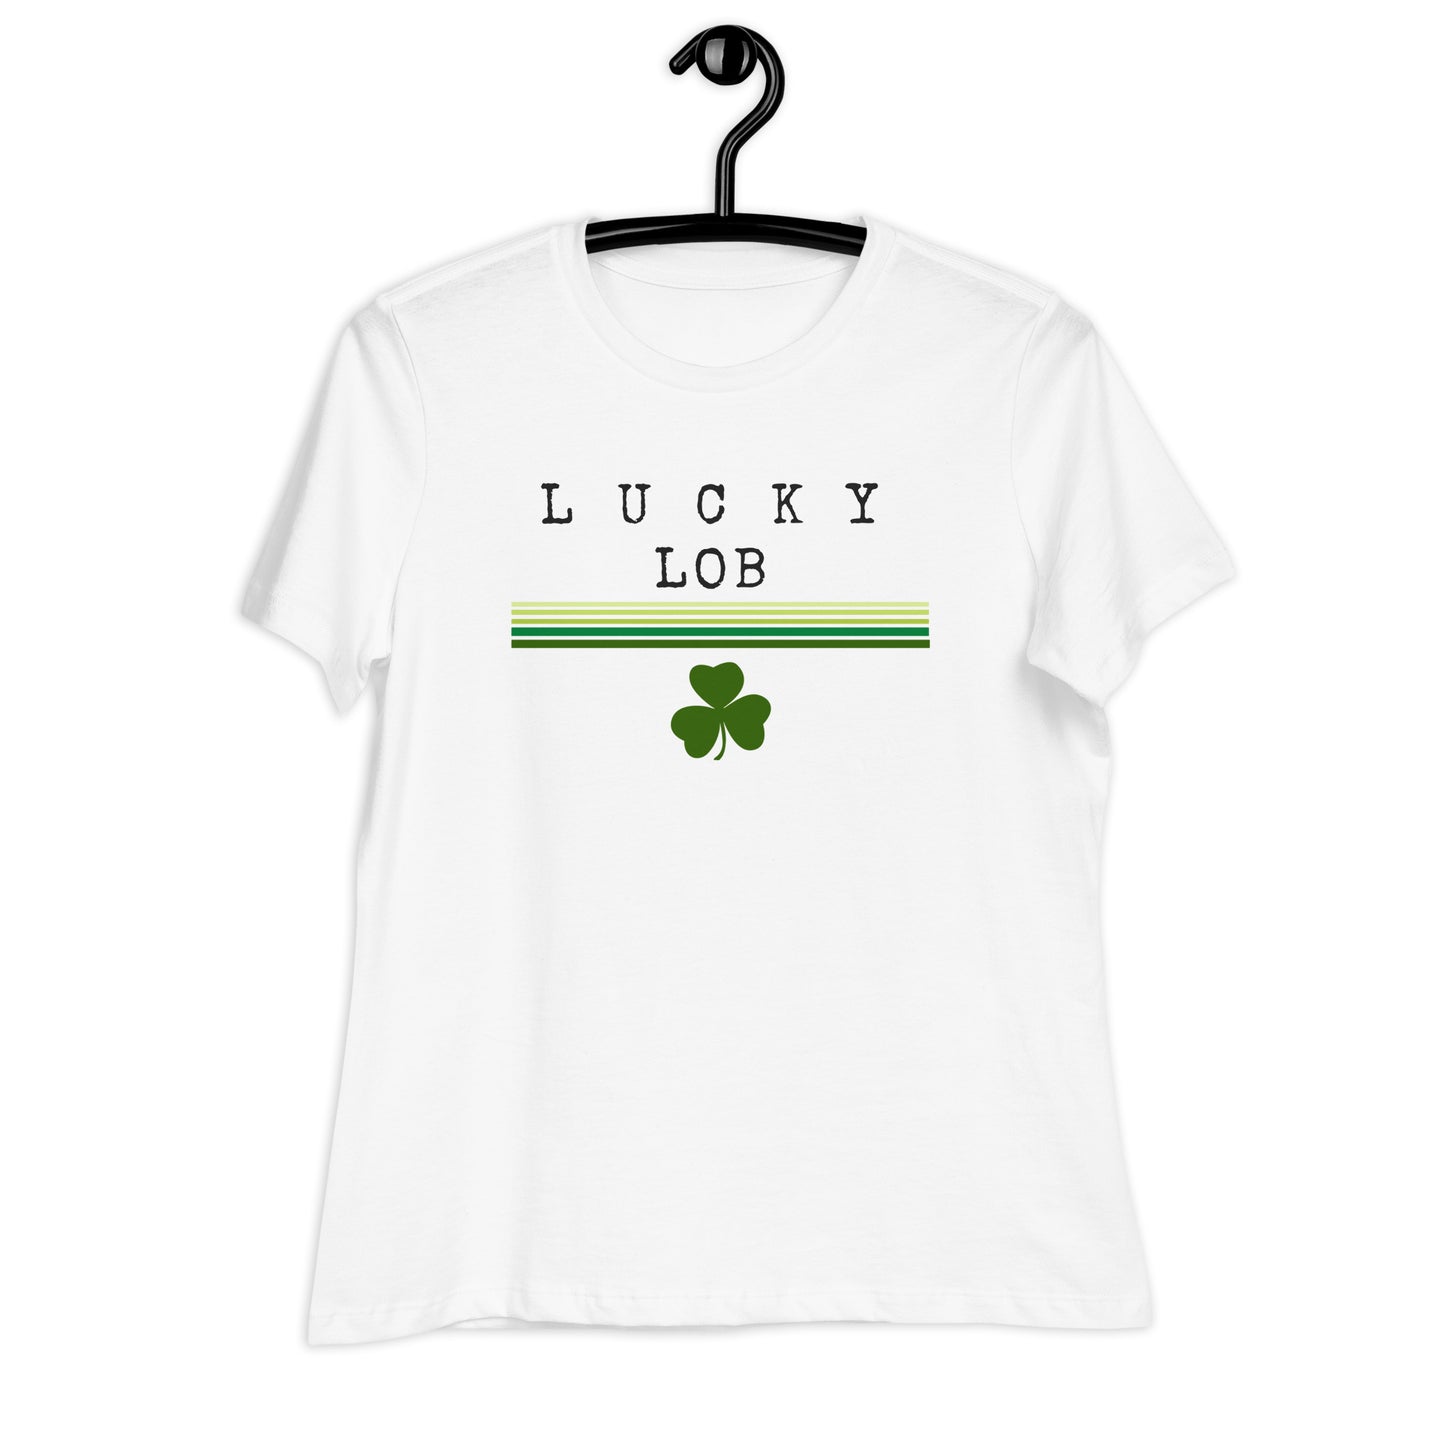 Lucky Lob ☘️ Women's Relaxed T-Shirt